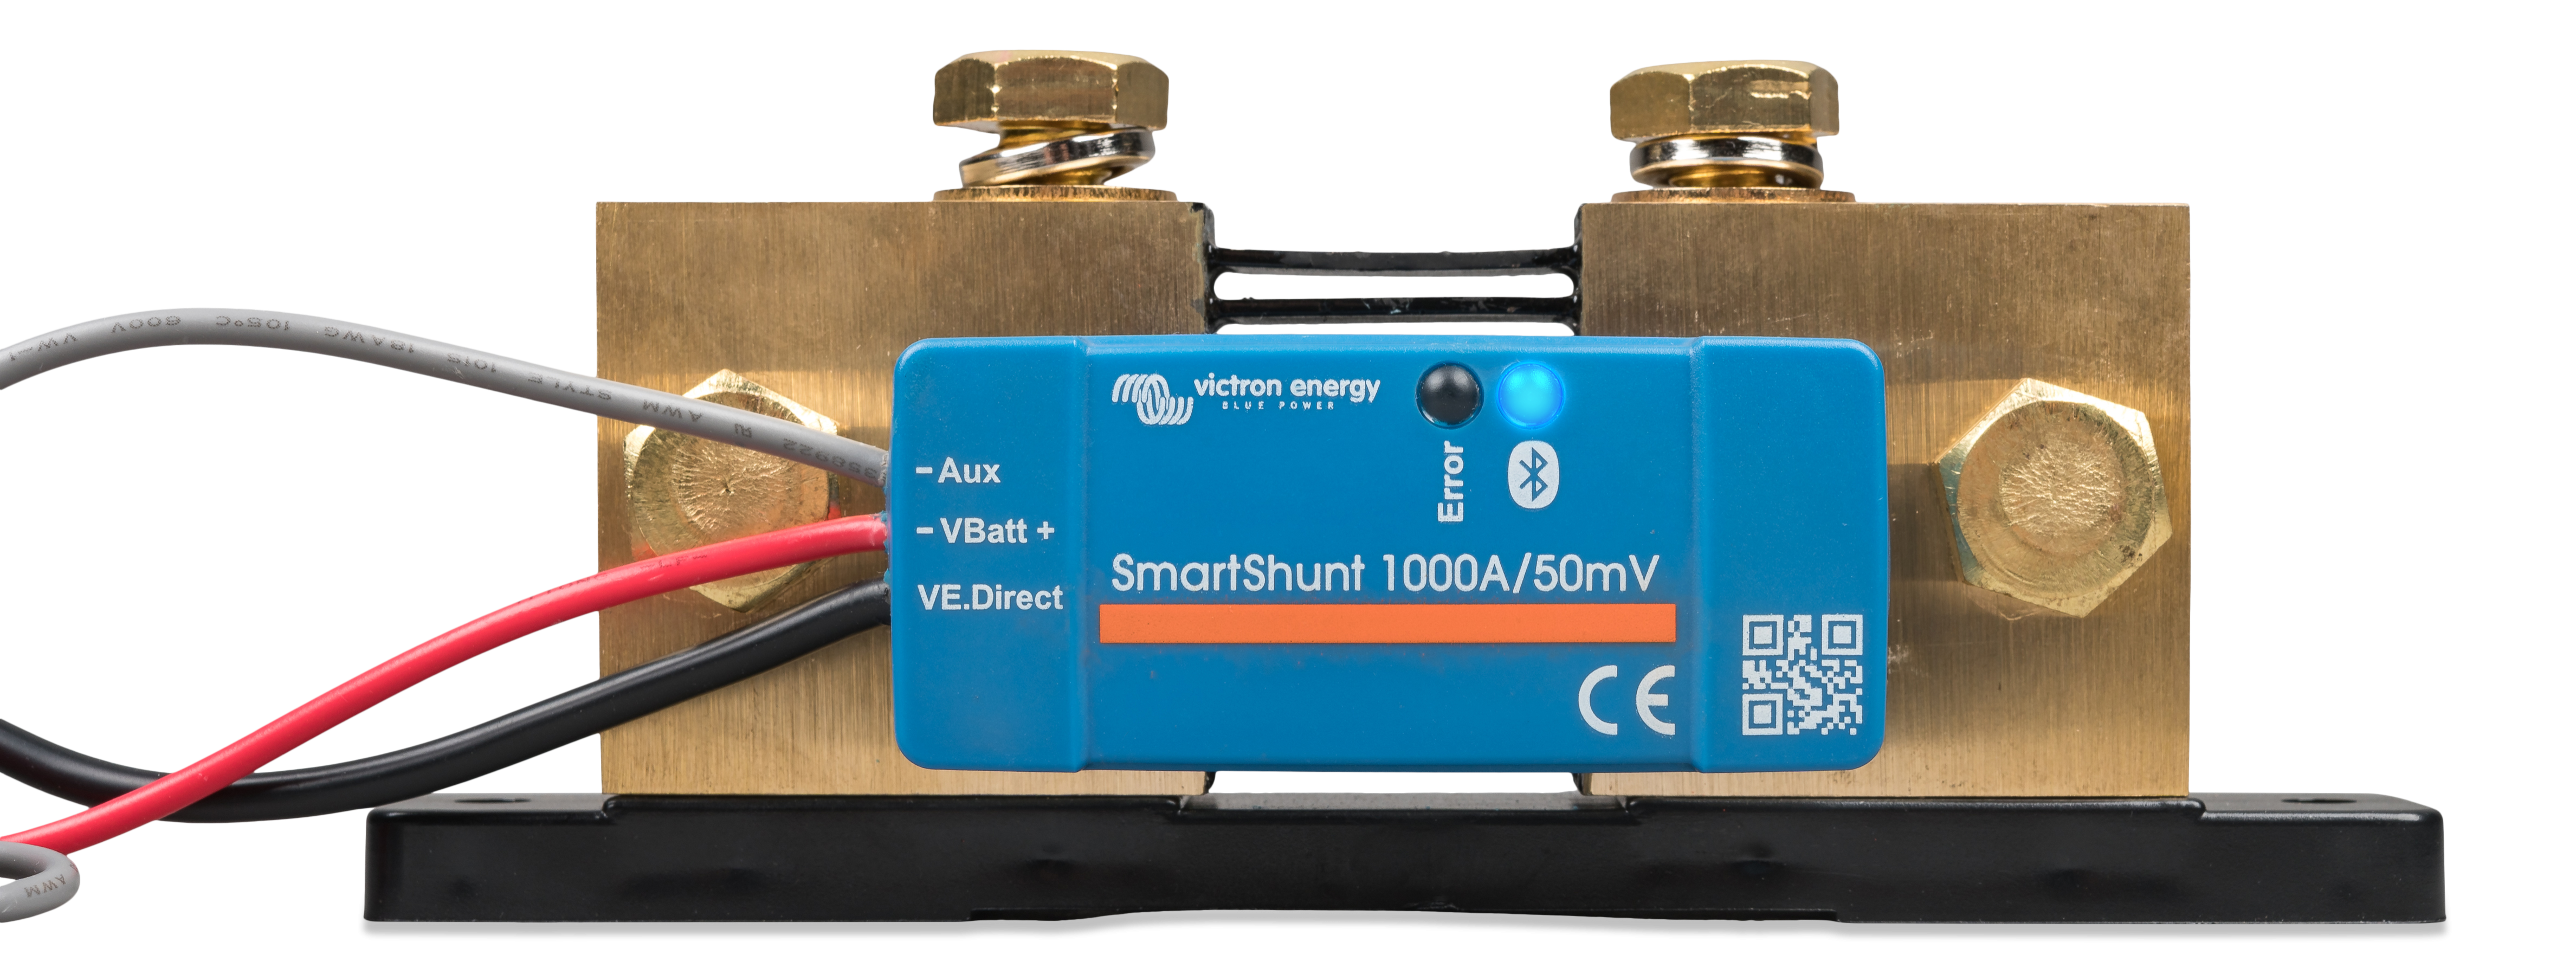 Smartshunt 1000A/50mV IP65